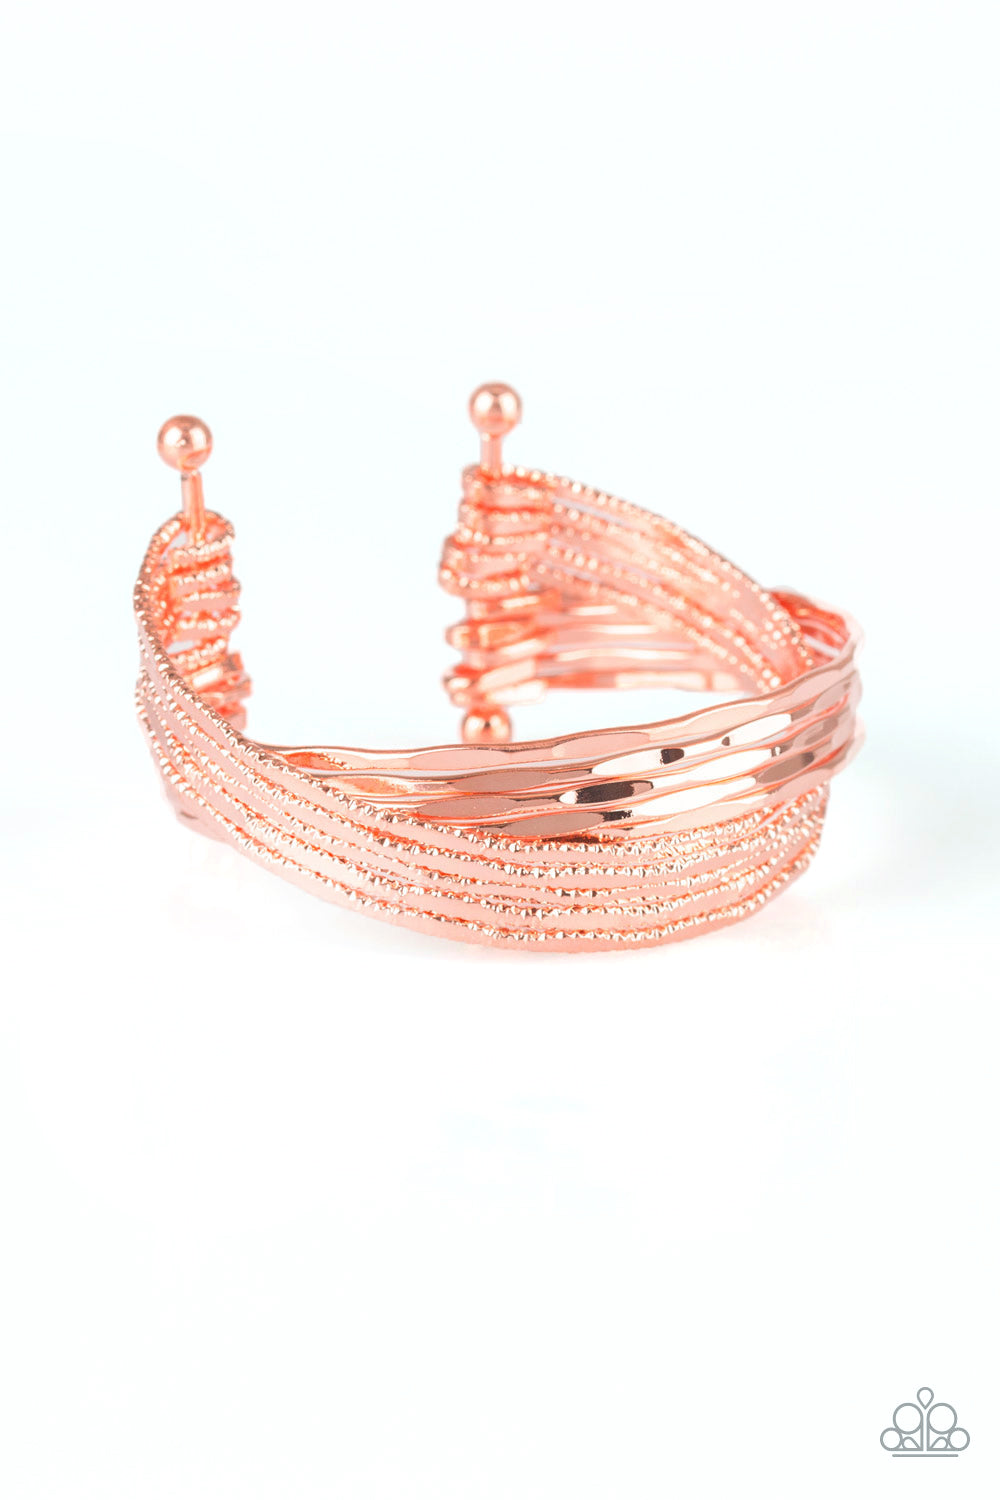 See A Pattern? - Copper Bracelet